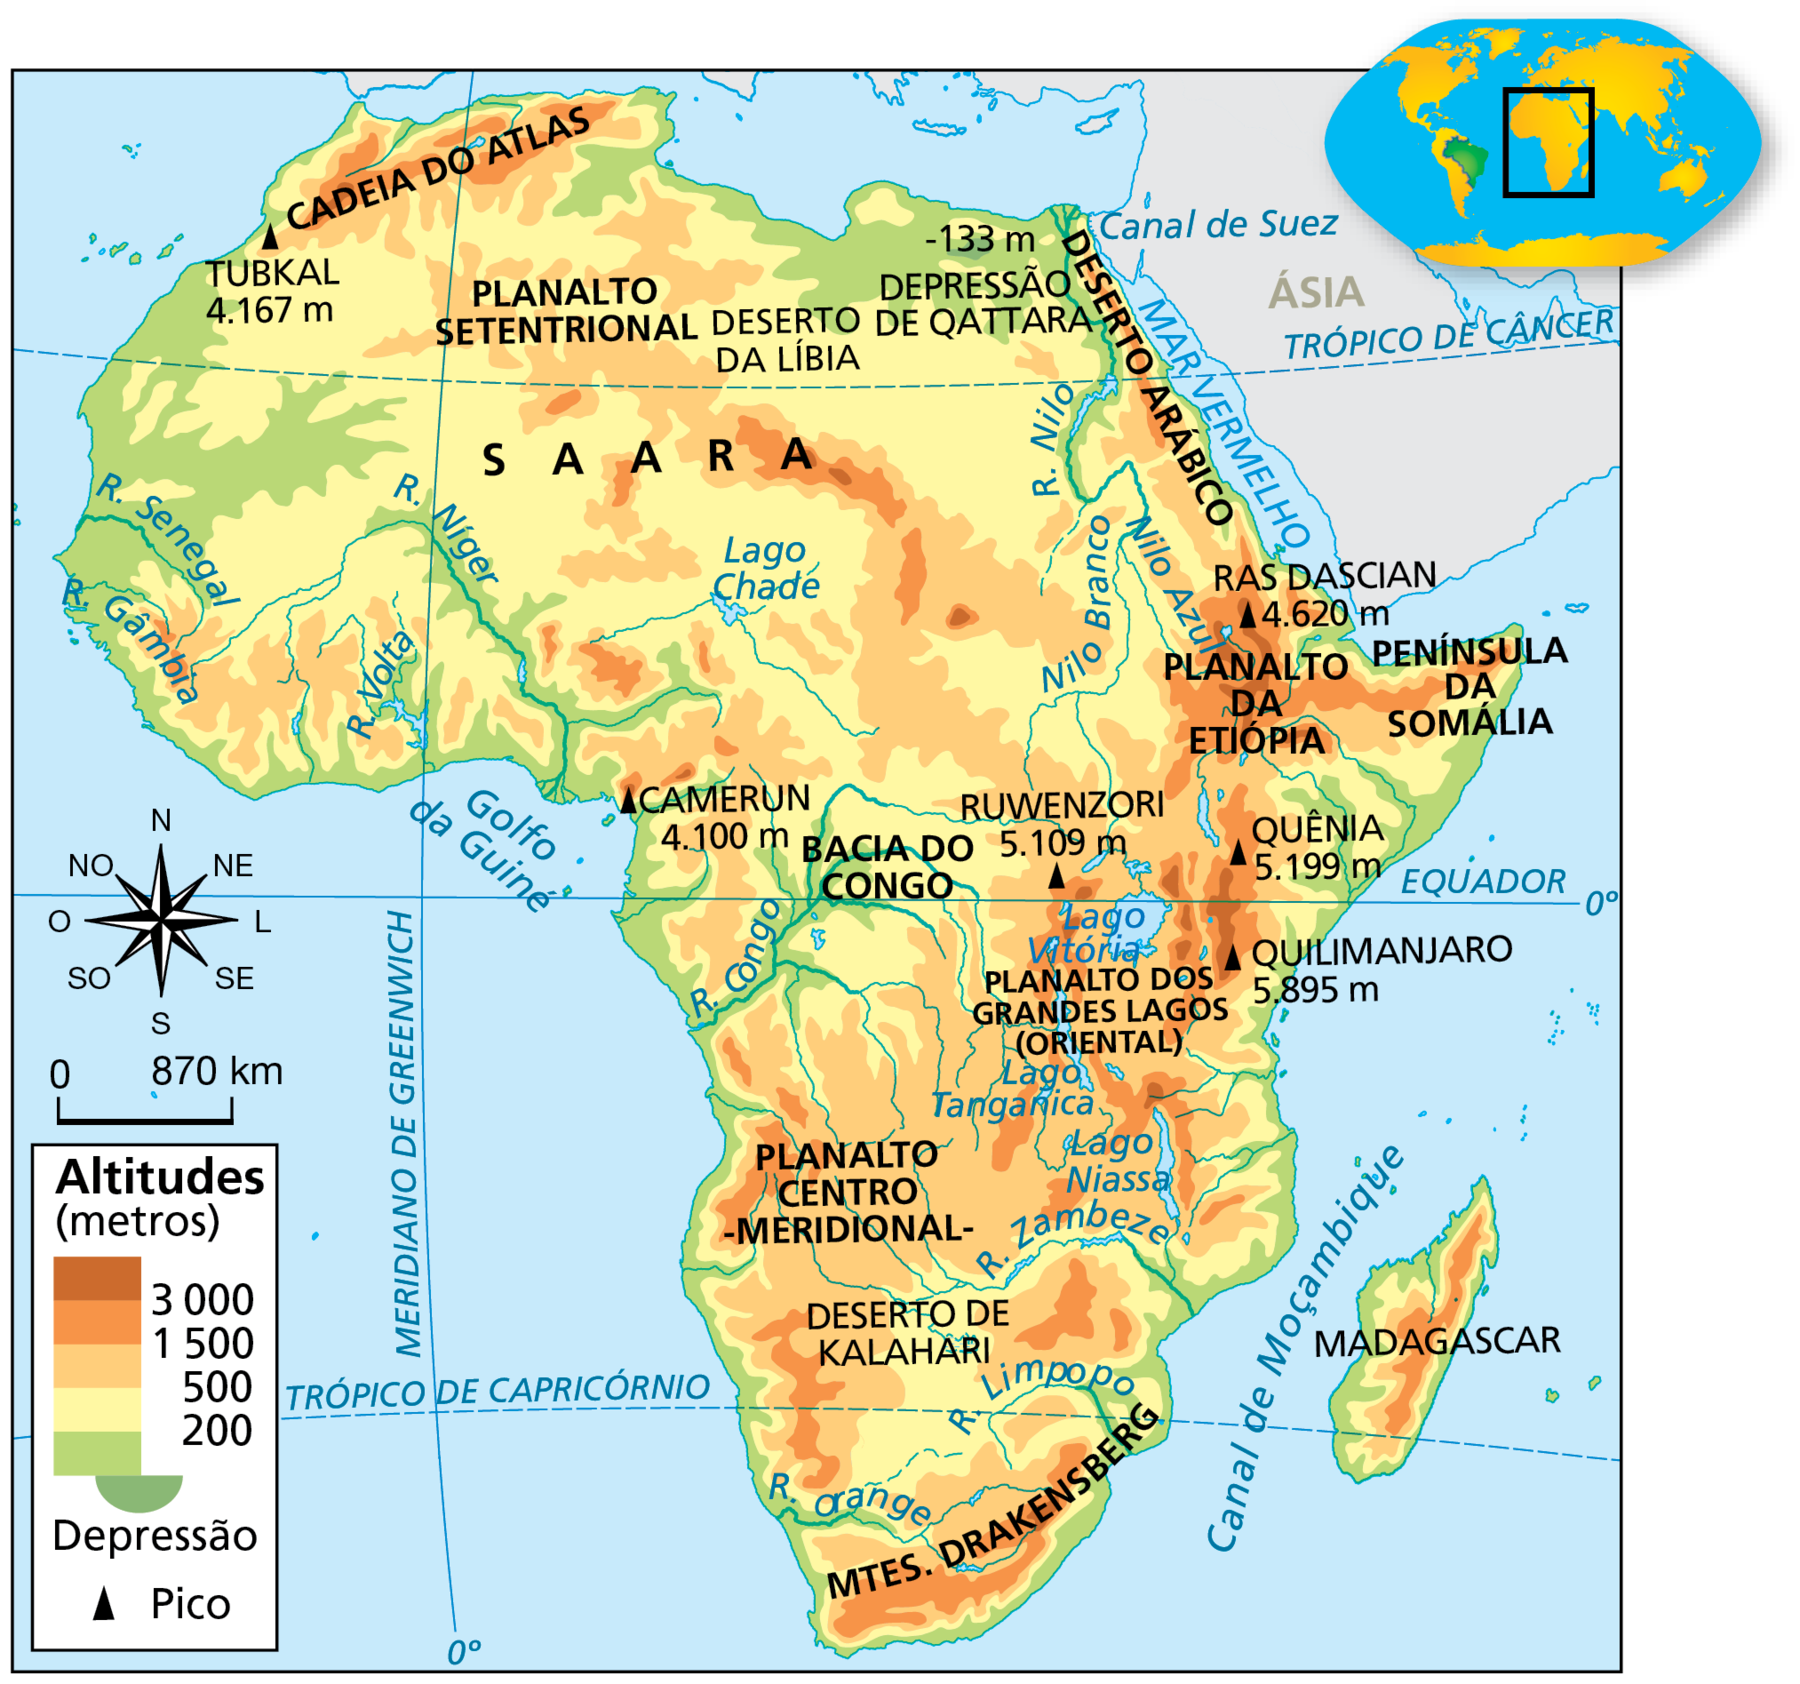 Mapa. África: relevo. Mapa da África representando as características físicas do território, como altitudes, principais rios e picos.
Altitudes (metros) 
Acima de 3.000 metros: área no Planalto da Etiópia, localizado a nordeste do continente, onde há o pico Ras Dascian de 4.620 metros. Também a leste do continente, próximo ao Lago Vitória, no Planalto dos Grandes Lagos (Oriental), onde estão os picos Quênia (5.199 metros), Quilimanjaro (5.895 metros) e Ruwenzori (5.109 metros); sudeste, no centro da ilha de Madagascar há uma faixa de 3.000 metros; a oeste, pequena área próxima ao litoral do Golfo da Guiné, onde está o pico Camerun, (4.100 metros).
De 1.500 a 3.000 metros: áreas na porção noroeste do continente onde há a Cadeia do Atlas; a nordeste, no Planalto da Etiópia e na península da Somália; a leste, no Planalto dos Grandes Lagos; a sudeste, na Ilha de Madagascar; e ao sul, em Drakensberg.
De 500 a 1.500 metros: extensa área no centro-sul e no centro-oeste do continente; a nordeste, nas bordas do Planalto da Etiópia e na Península da Somália; a leste, no Planalto dos Grandes Lagos (Oriental); no norte, na Cadeia do Atlas; na porção central do Saara. 
De 200 a 500 metros: maior parte da porção noroeste e nordeste do continente; em áreas próximas às costas leste e sudeste e ao centro, na Bacia do Congo.
0 a 200 metros: altitude predominante em todo o litoral do continente e nas margens dos principais rios (Senegal, Gâmbia, Níger, Volta, Nilo, Congo e Orange).
Depressão: Depressão de Qattara, no noroeste do Egito, com 133 metros abaixo do nível do mar.
Picos: Quilimanjaro 5.895 metros, Quênia 5.199 metros, Ruwenzori 5.109 metros, Ras Dascian 4.620 metros, Camerun 4.100 metros e Tubkal 4.167 metros. 
À esquerda, a rosa dos ventos e escala de 0 a 870 quilômetros.